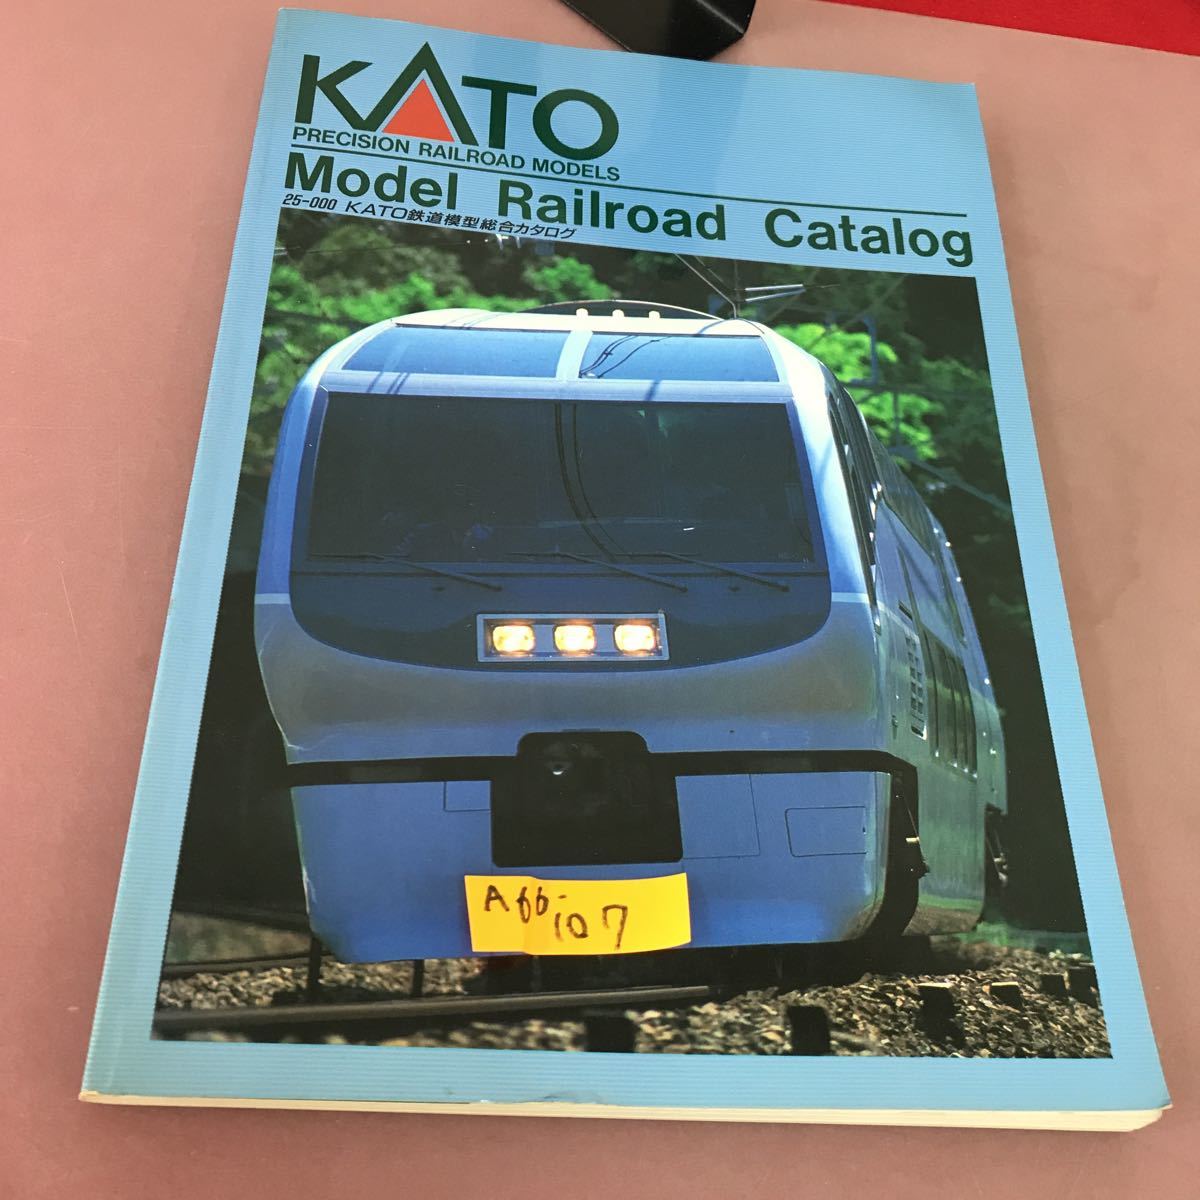 驚きの値段で KATO A66-107 MODEL KATO鉄道模型総合カタログ CATALOG RAILROAD 模型、プラモデル、ラジコン